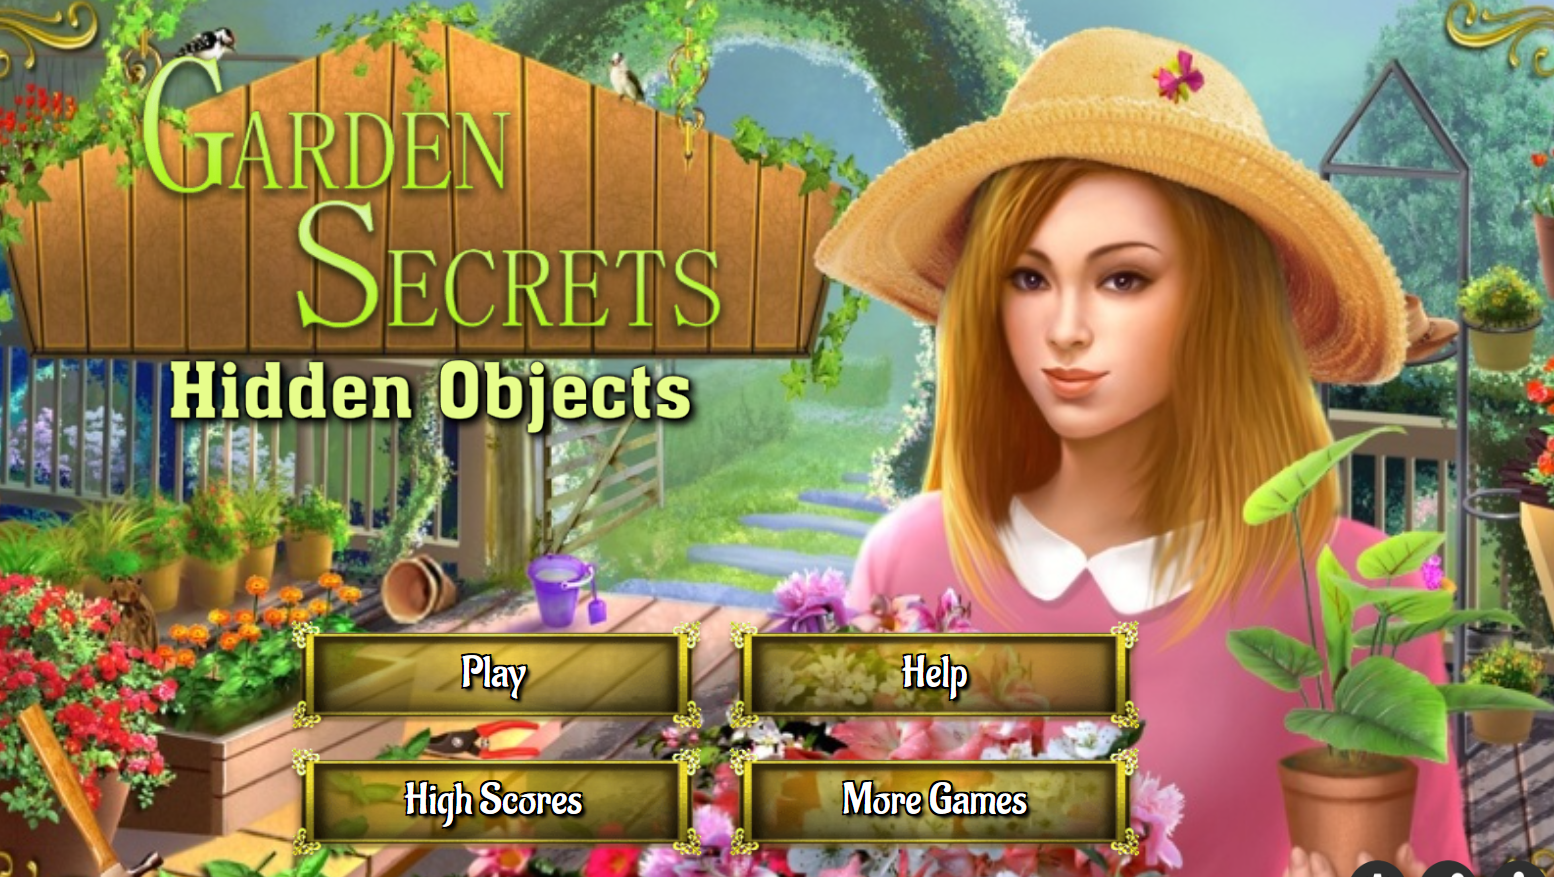 Secrets objects